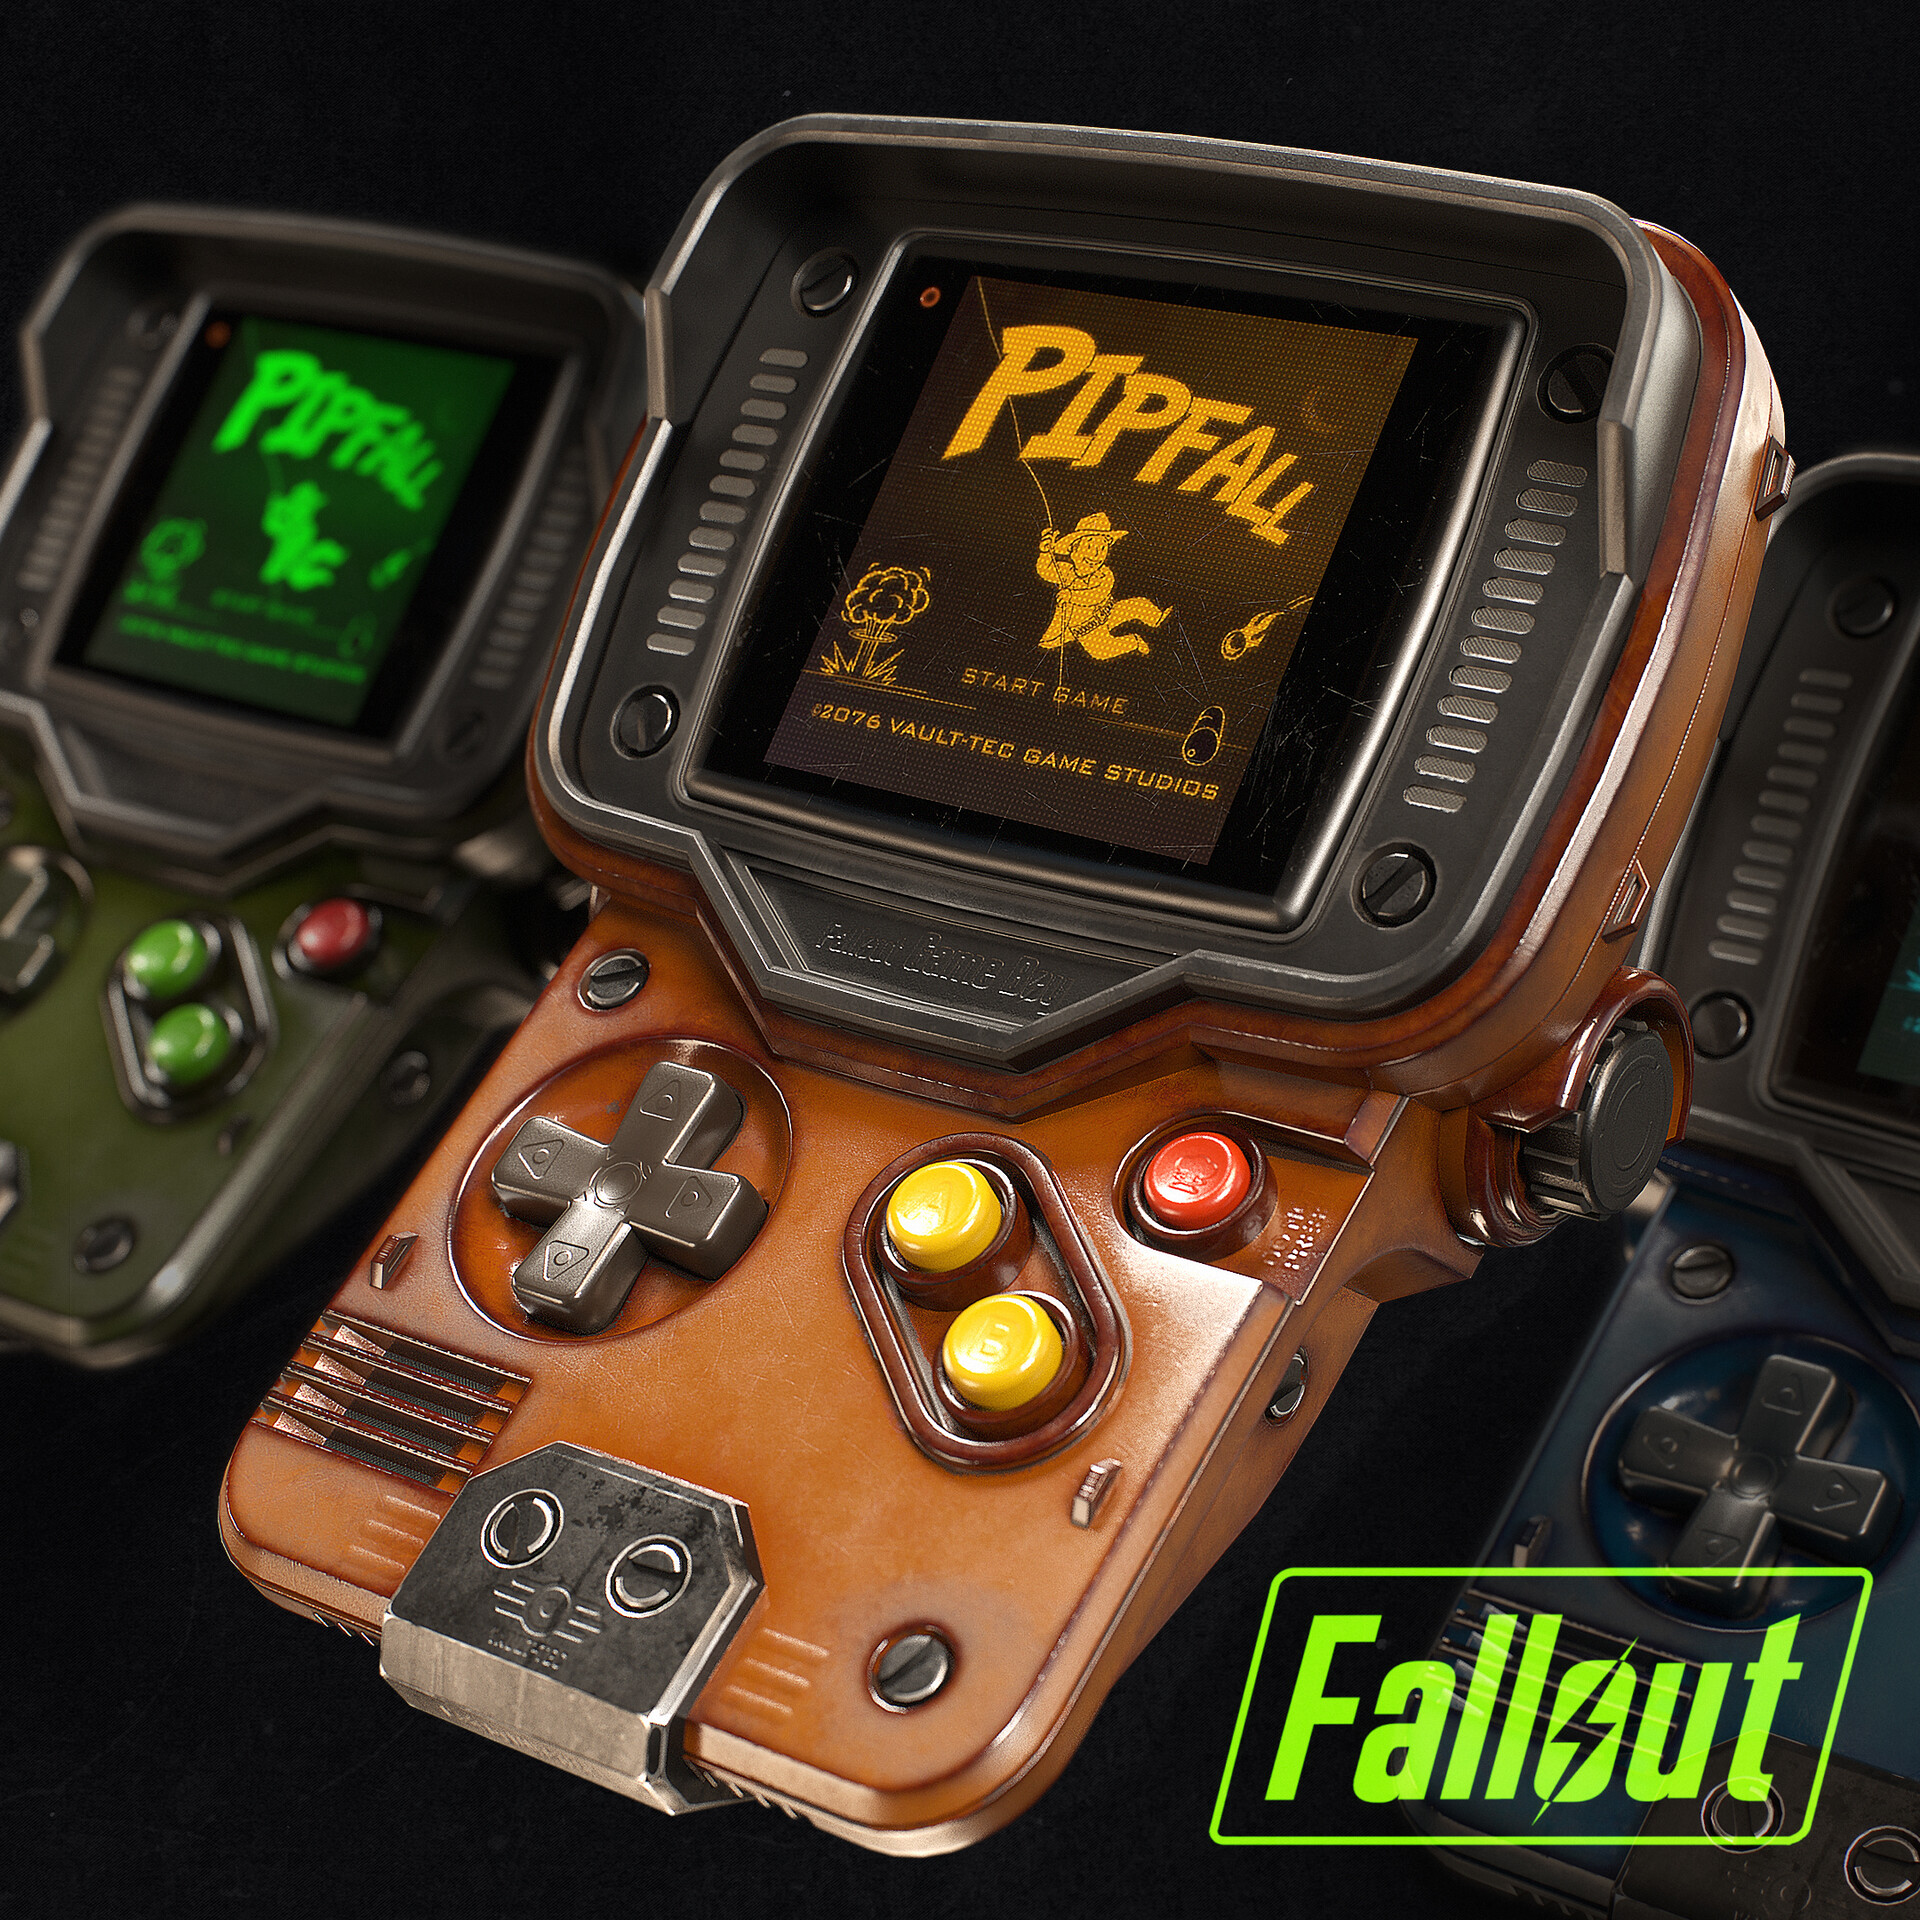 Стиле fallout. Компьютер в стиле Fallout.